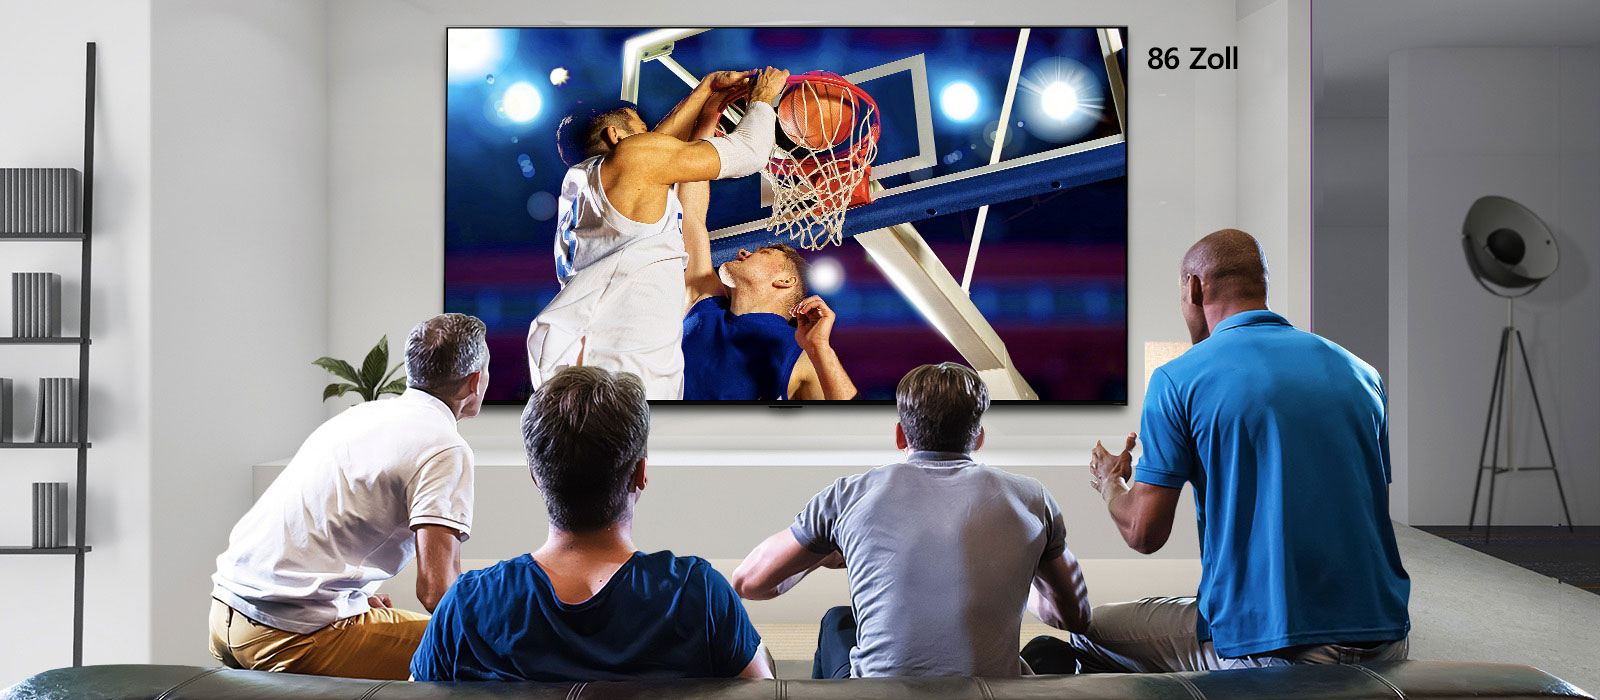 Rückansicht eines an der Wand montierten Fernsehers, der ein Basketballspiel zeigt, das von vier Männern verfolgt wird. Das Scrollen von links nach rechts zeigt den Grössenunterschied zwischen dem 43-Zoll- und dem 86-Zoll-Bildschirm.